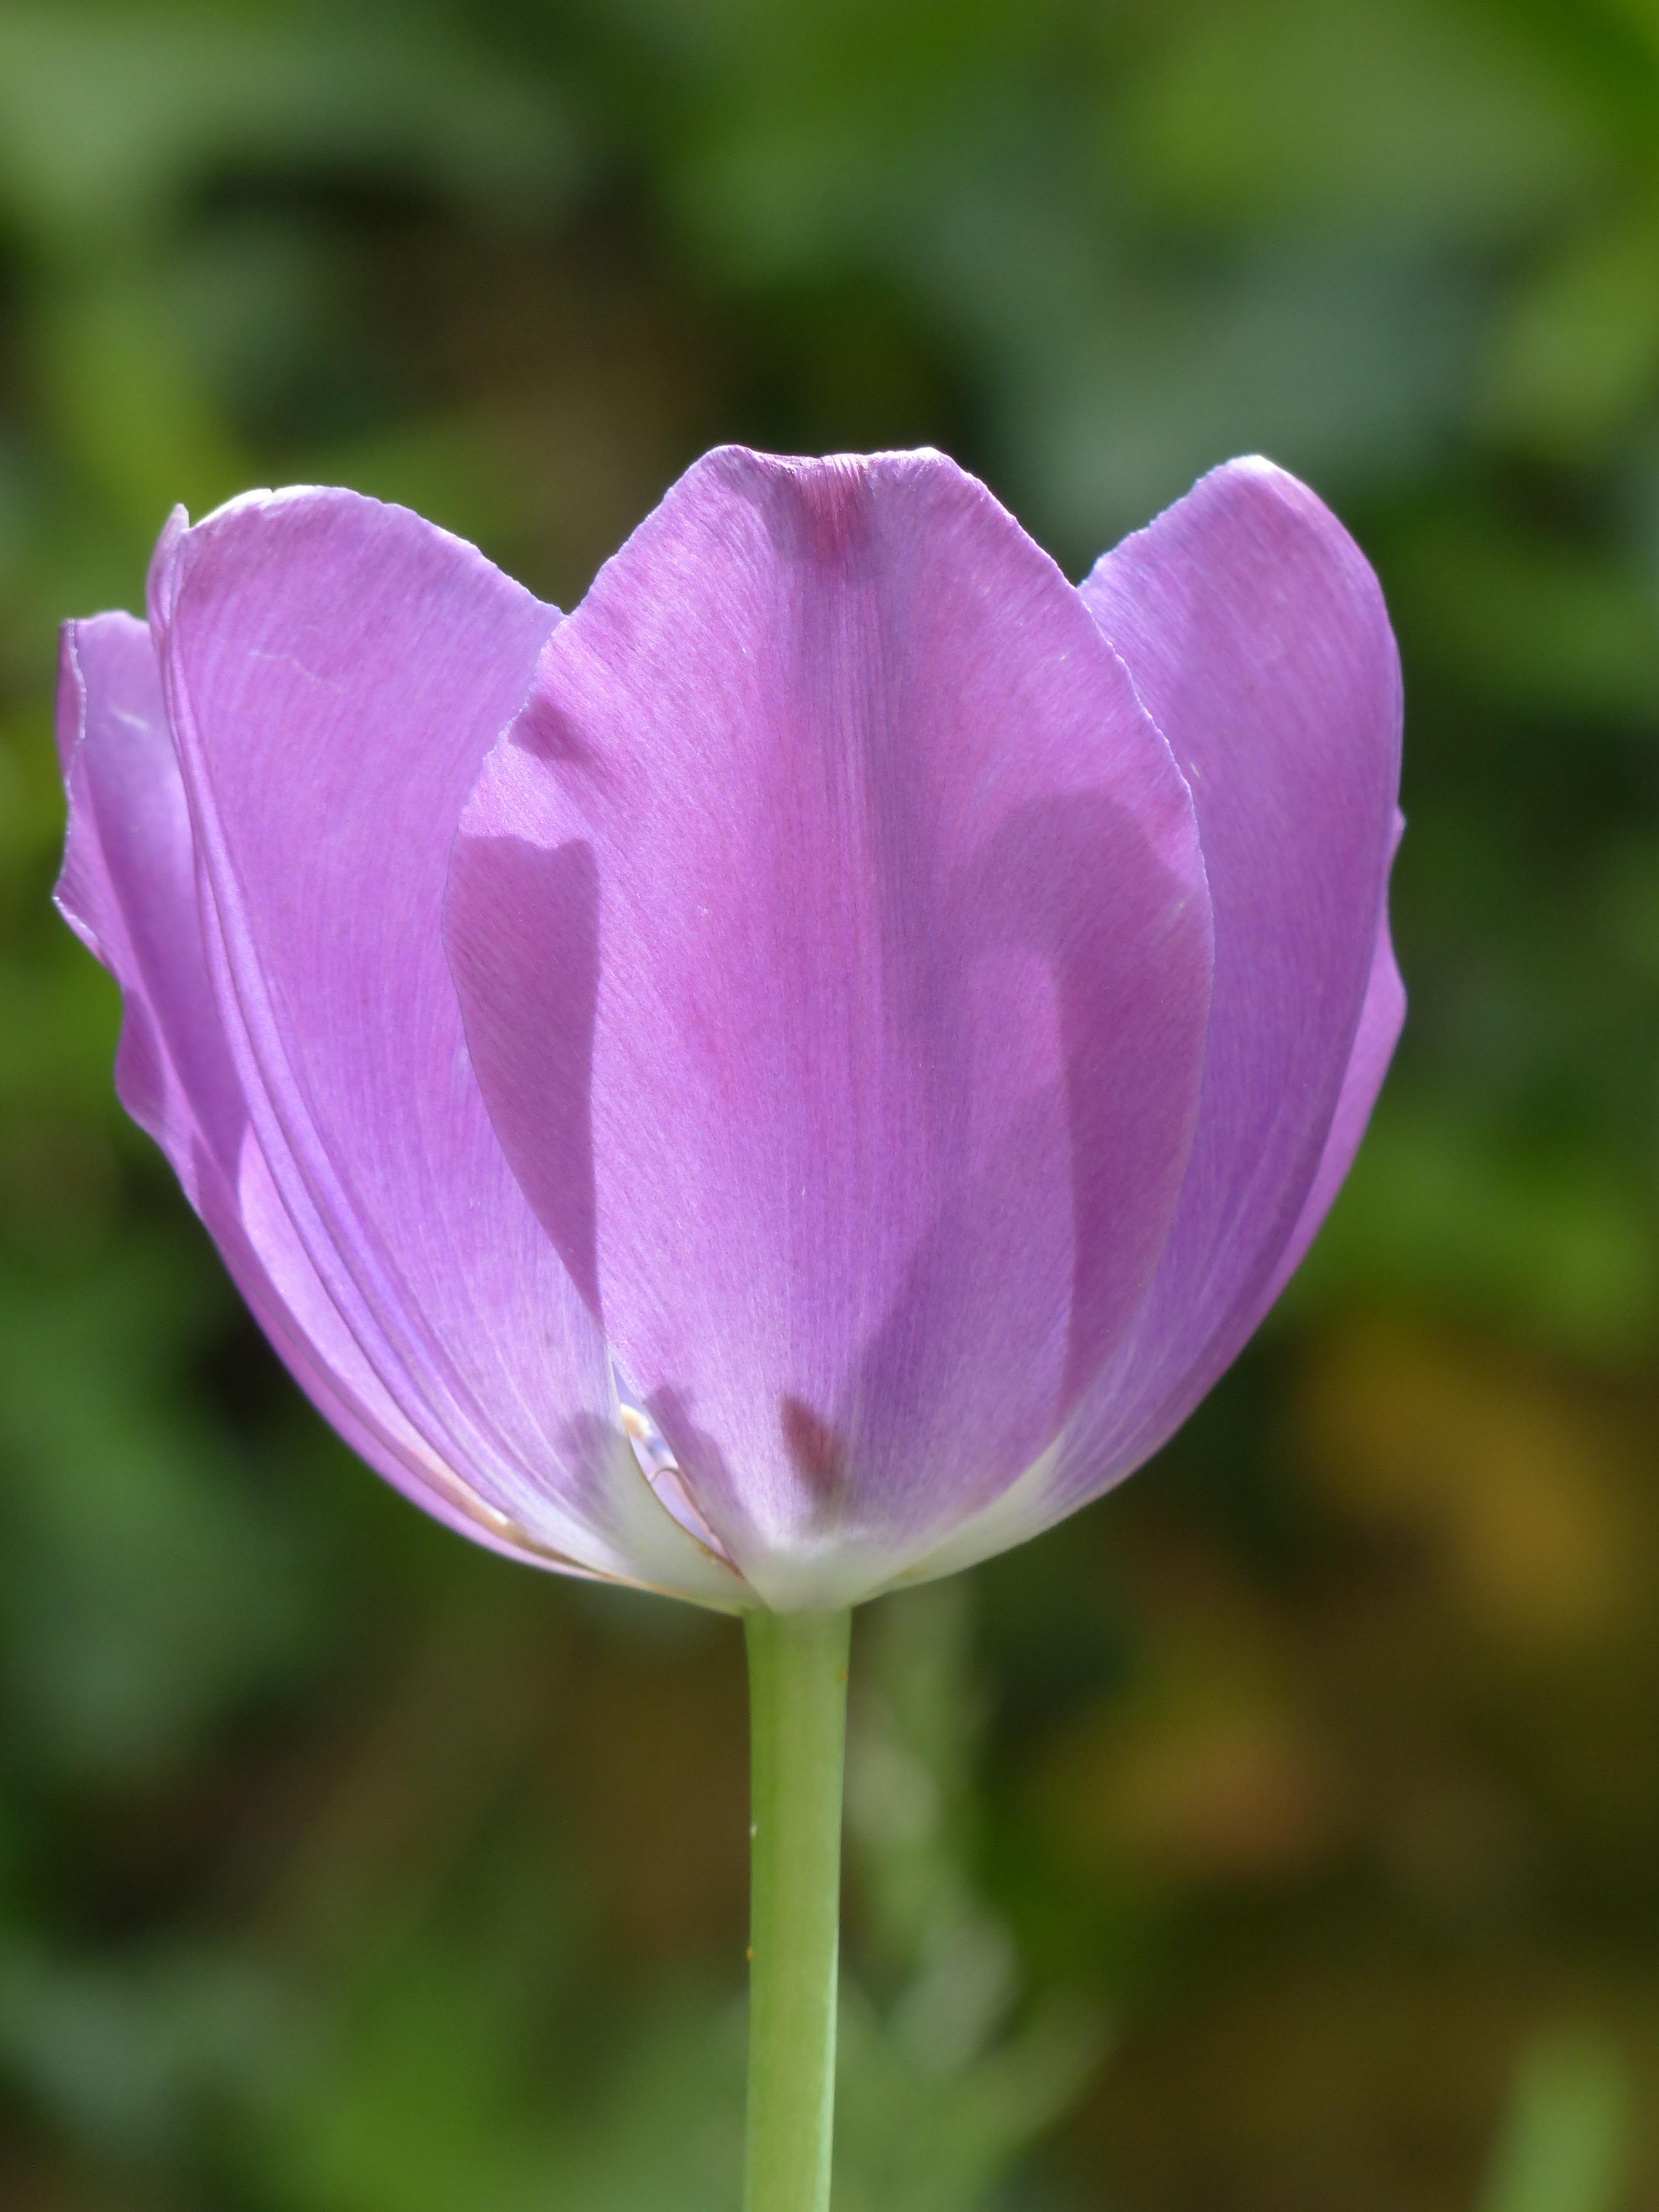 Tulip Triumph 'Alibi' - Tulip from Leo Berbee Bulb Company